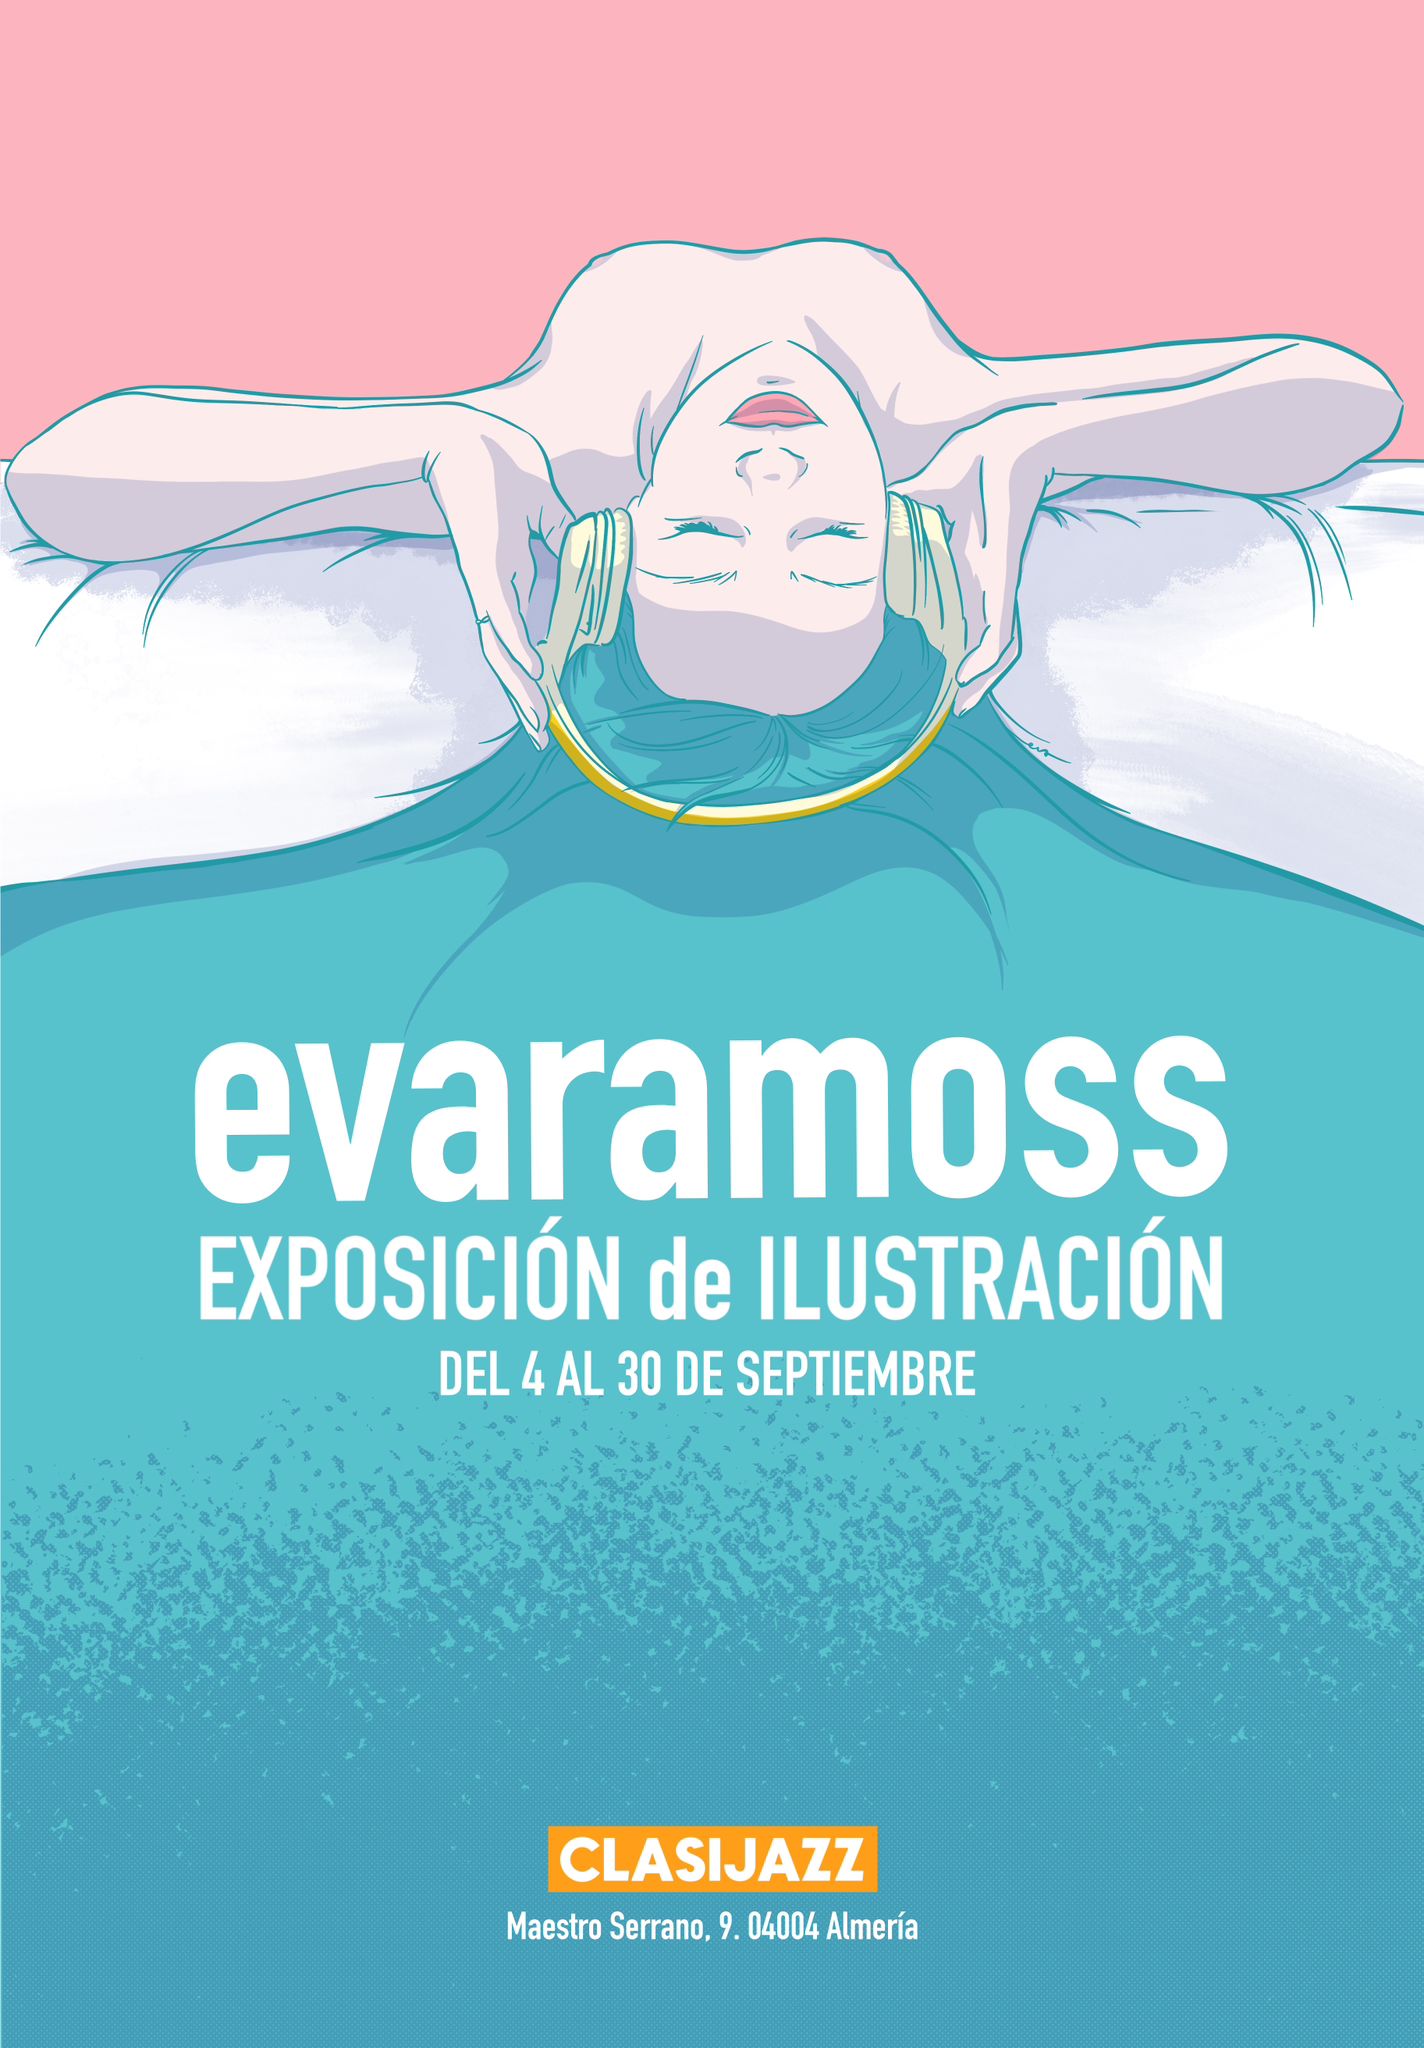 Evaramoss Exposición de Ilustración